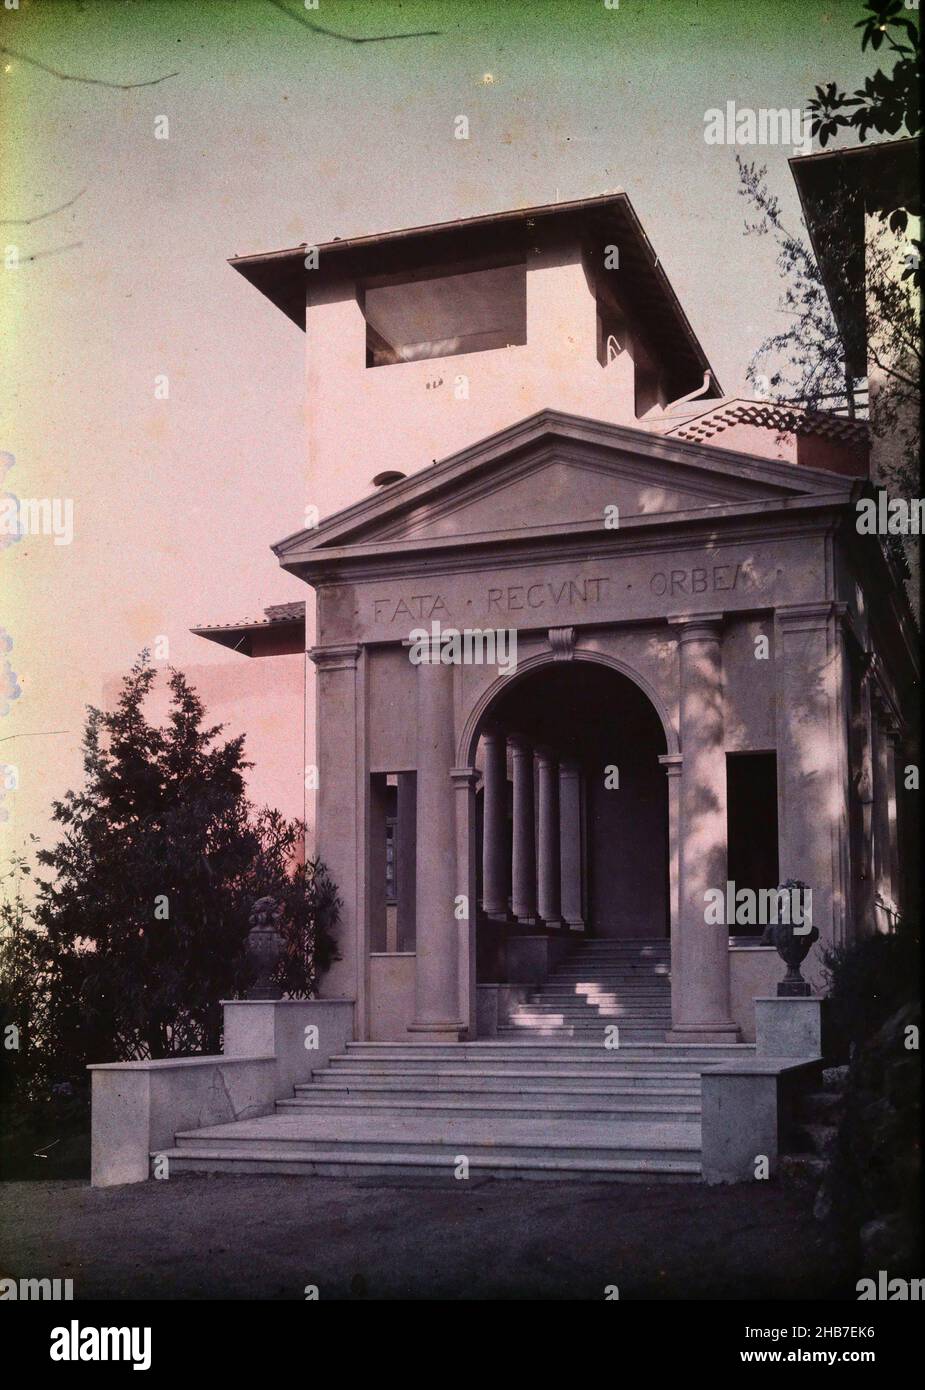 Portikus der Villa La Fiorentina in der Nähe von Saint Jean Cap Ferrat, auf dem Portikus steht: FATA Regunt Orbem., anonym, c. 1917 - c. 1940, Glas, Höhe 130 mm × Breite 180 mm Stockfoto